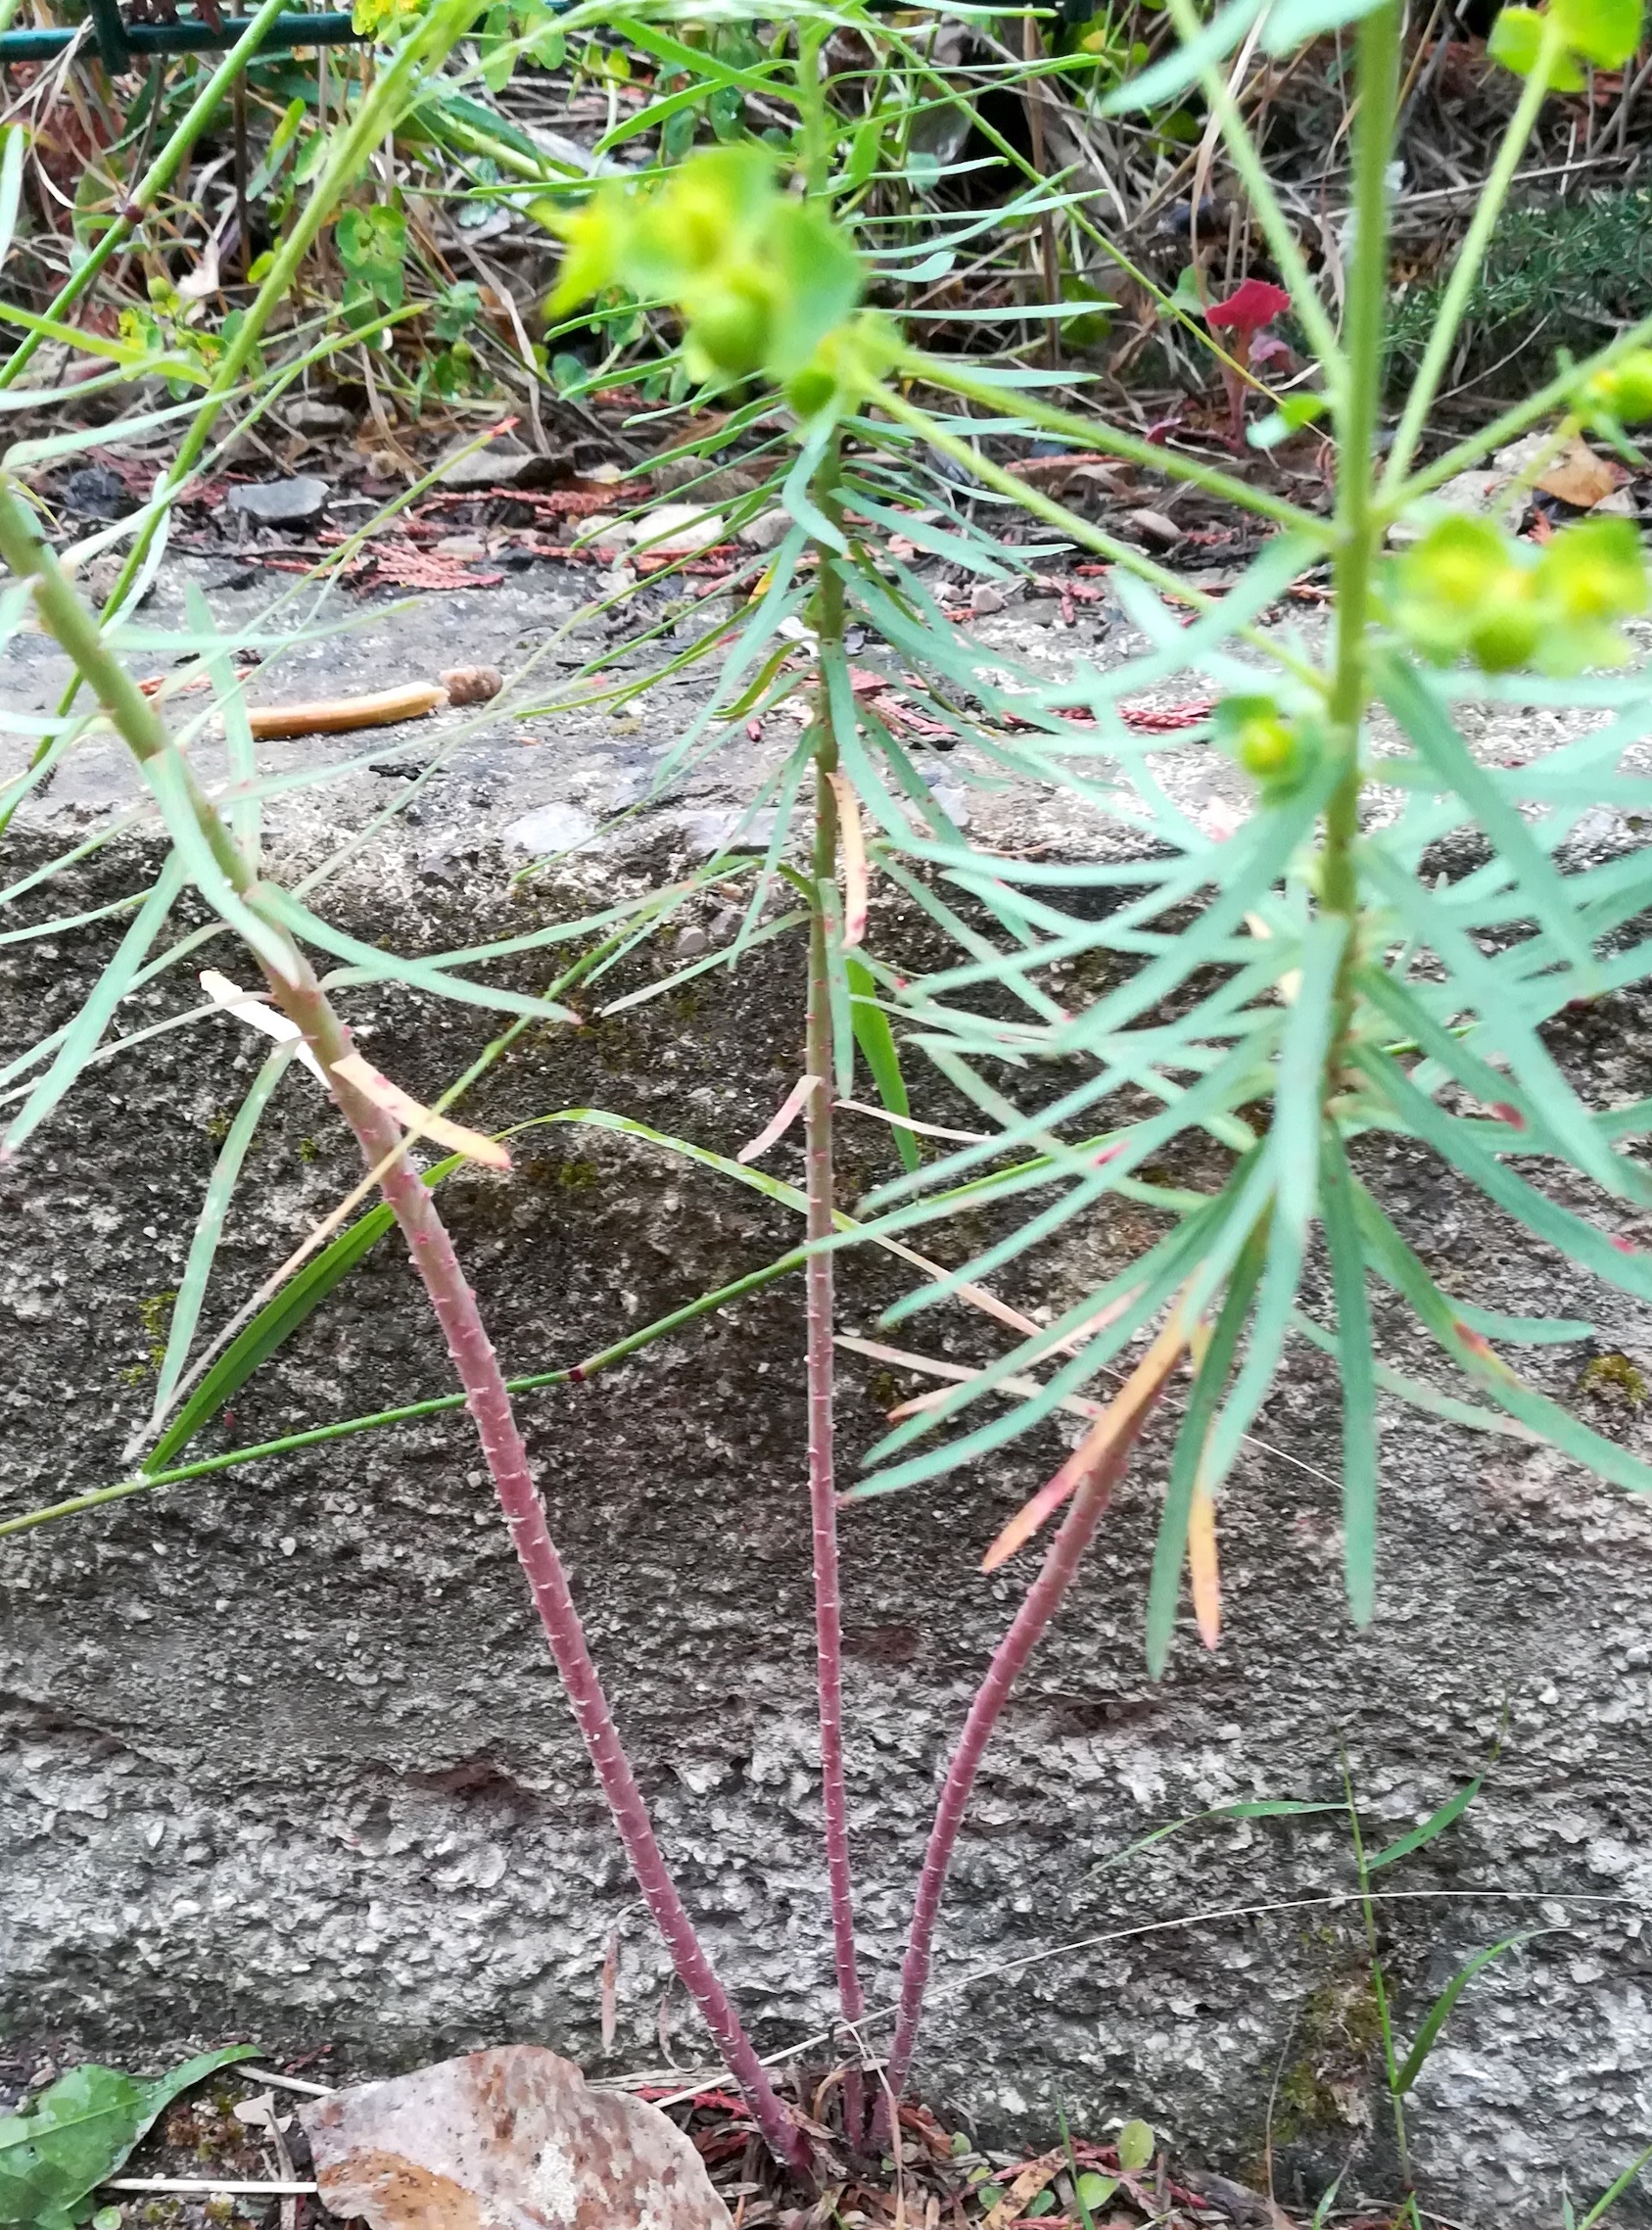 euphorbia segetalis subsp. segetalis roquebrune-cap martin alpes-martimes frankreich_20230520_080520.jpg